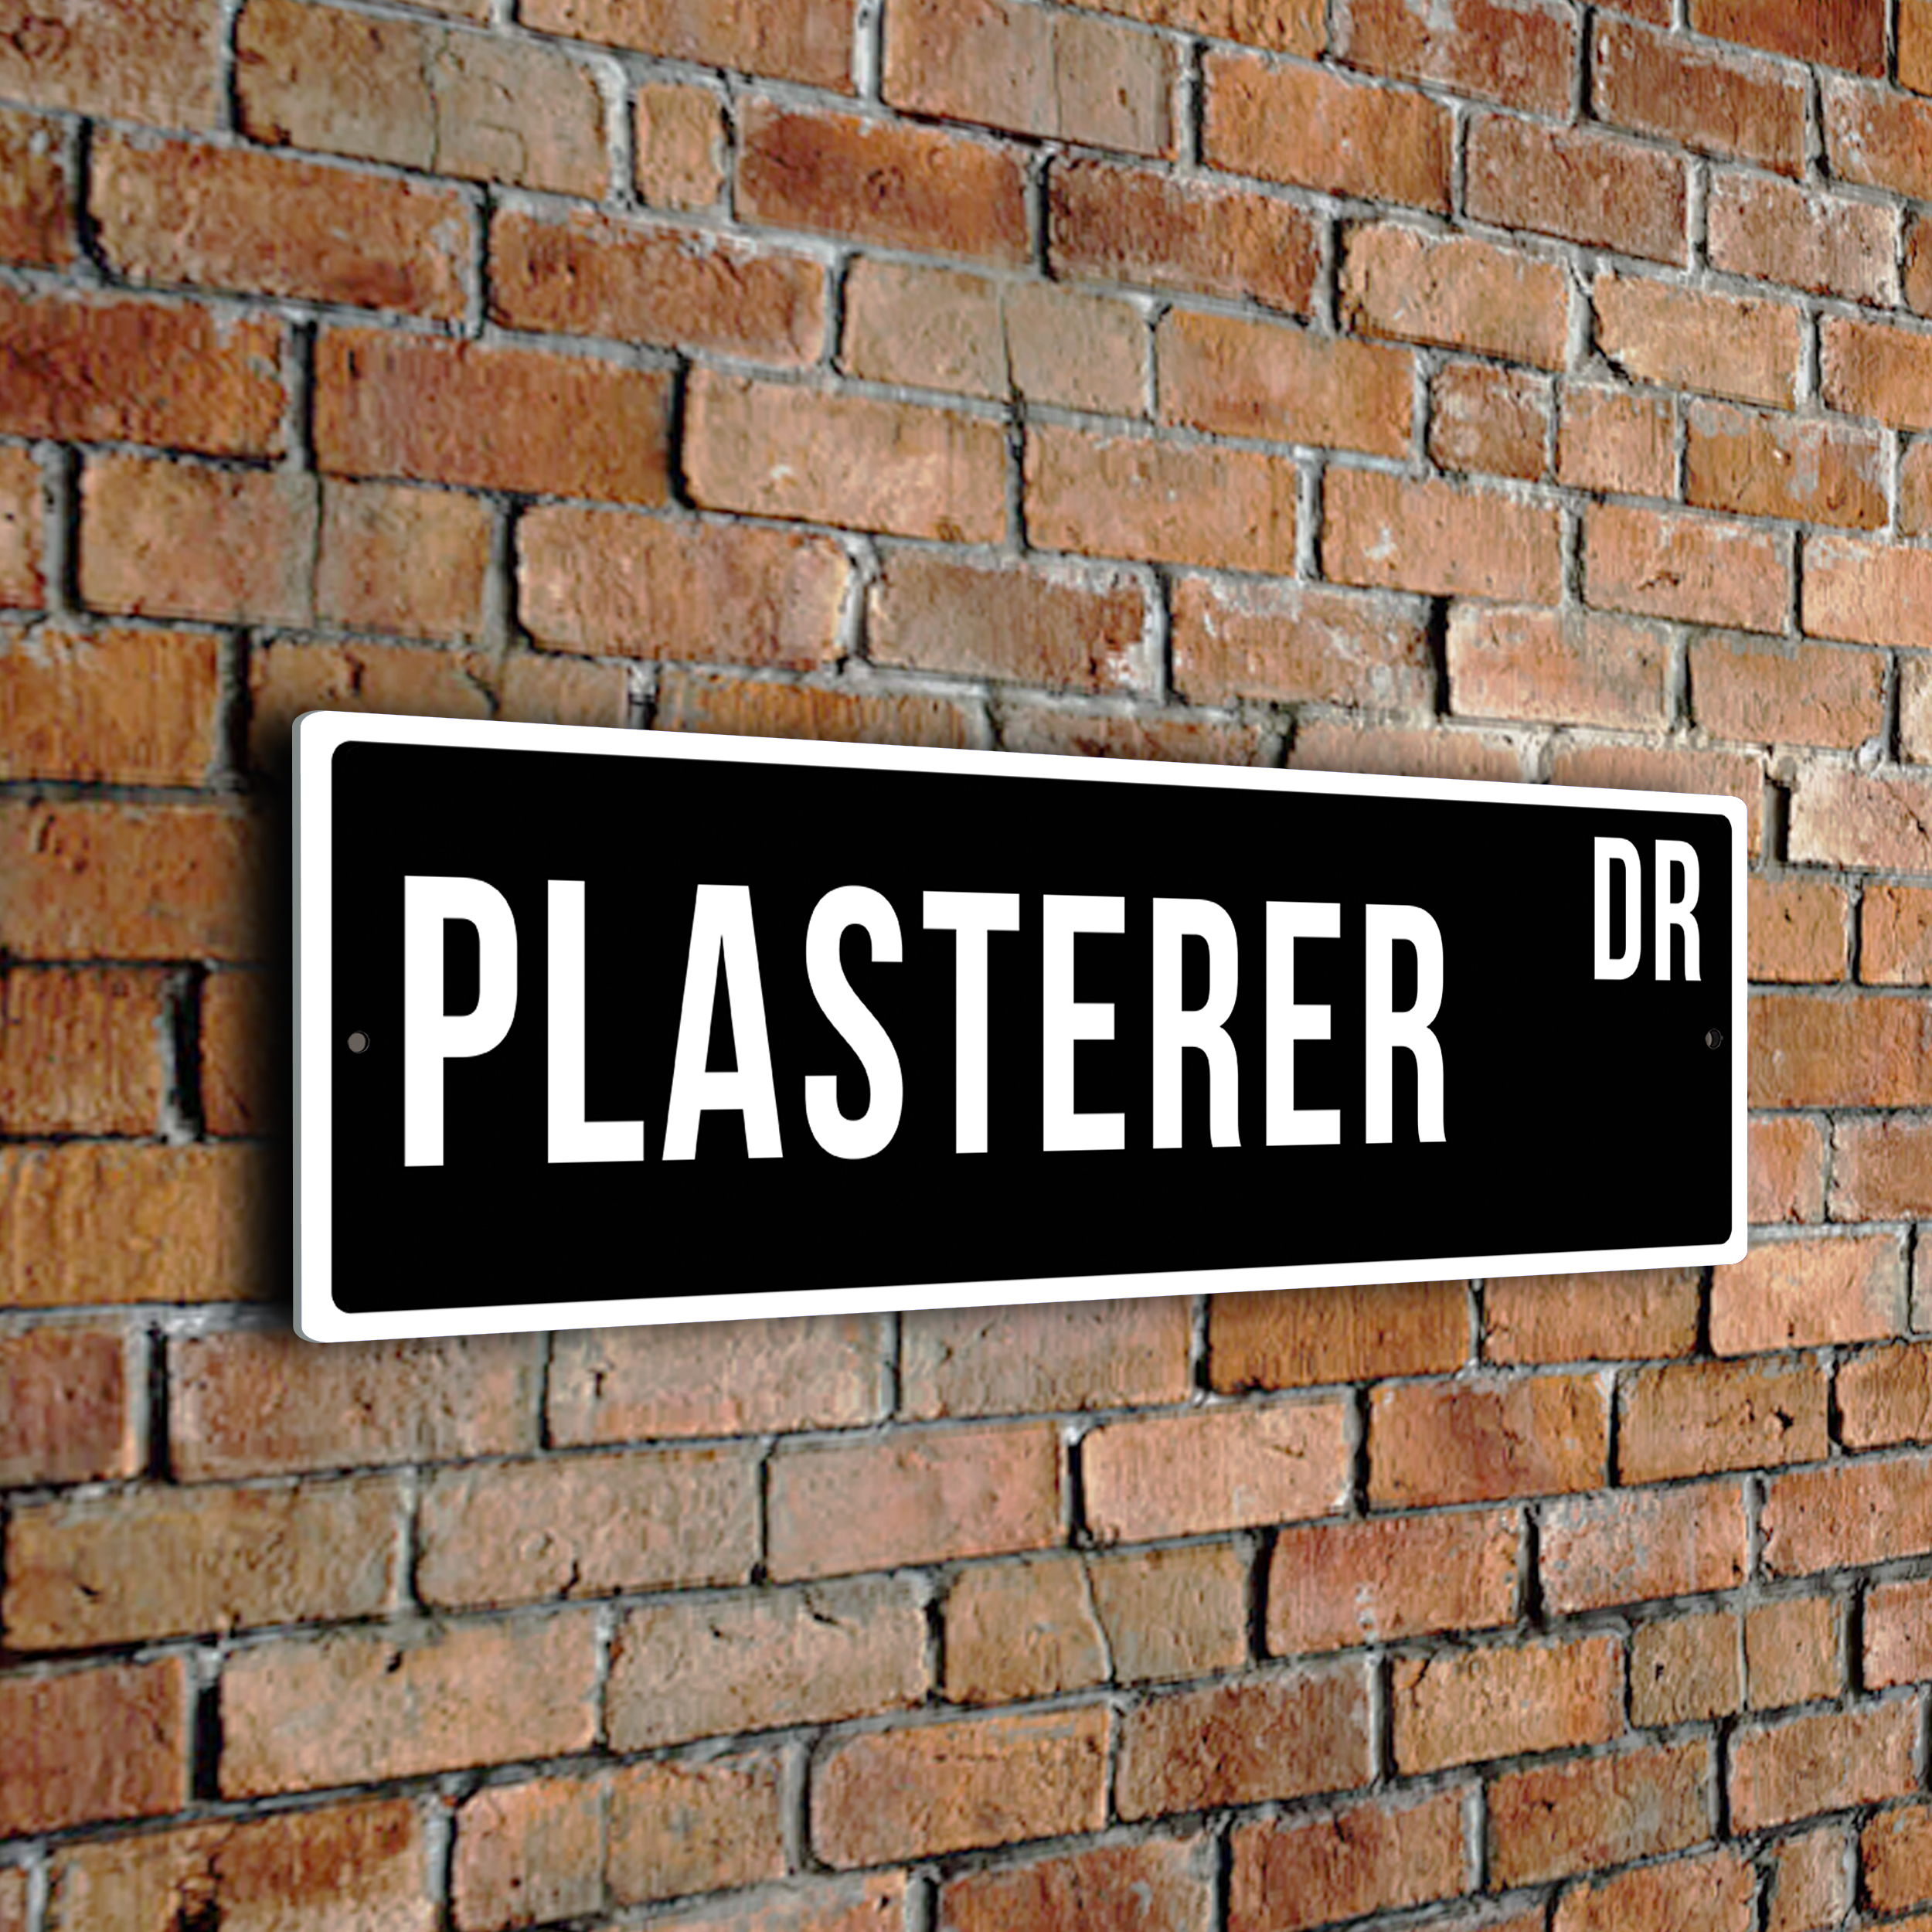 Plasterer street sign